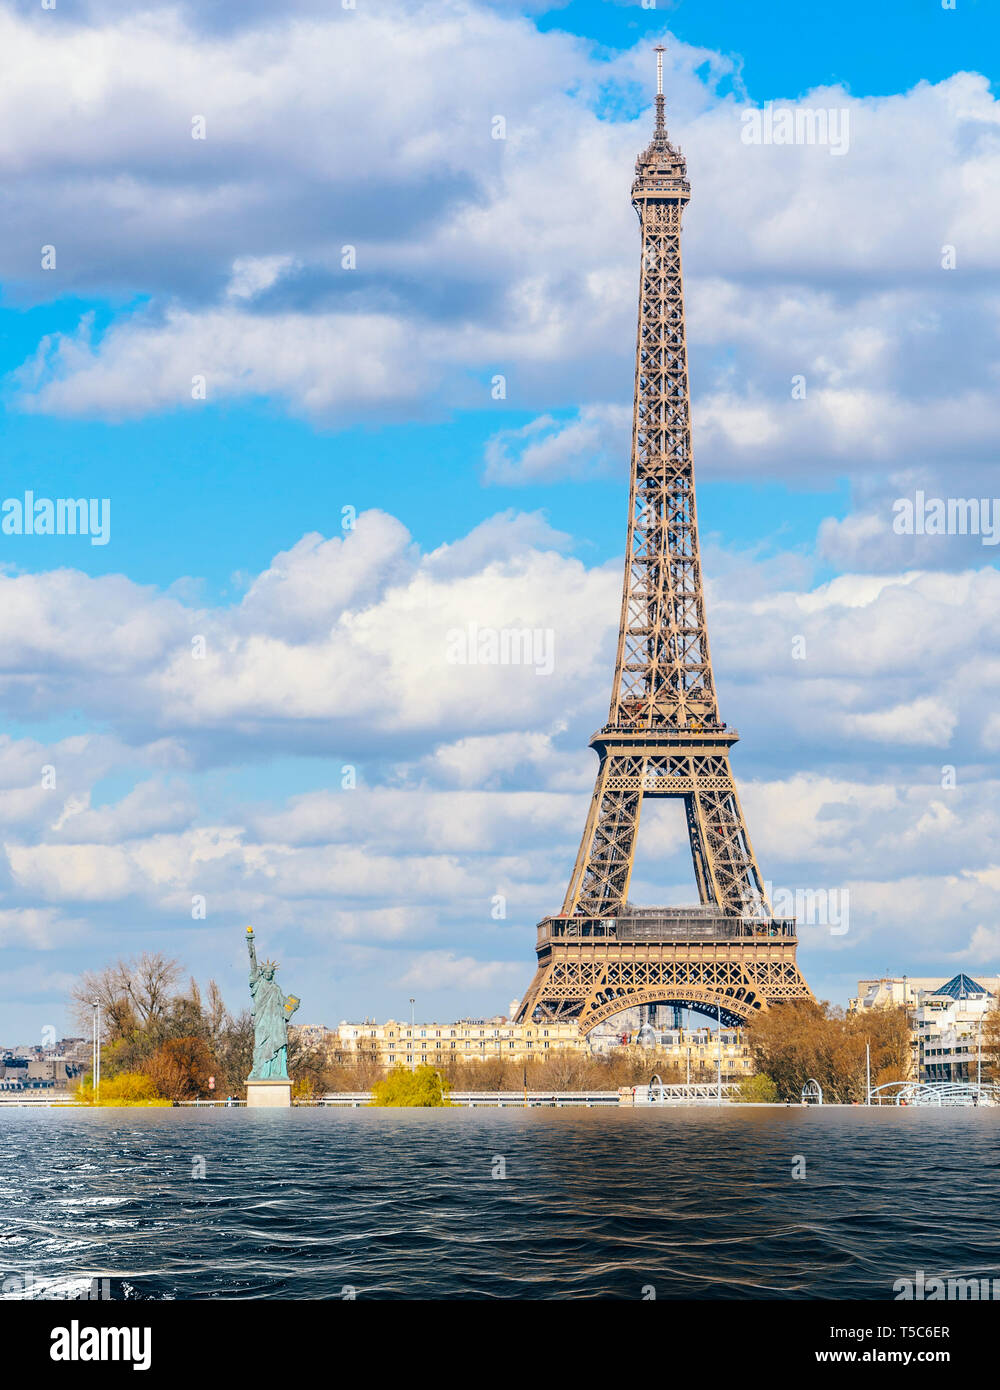 Le réchauffement, fonte des glaciers, les changements climatiques concept d'inondation à Paris, France. Banque D'Images